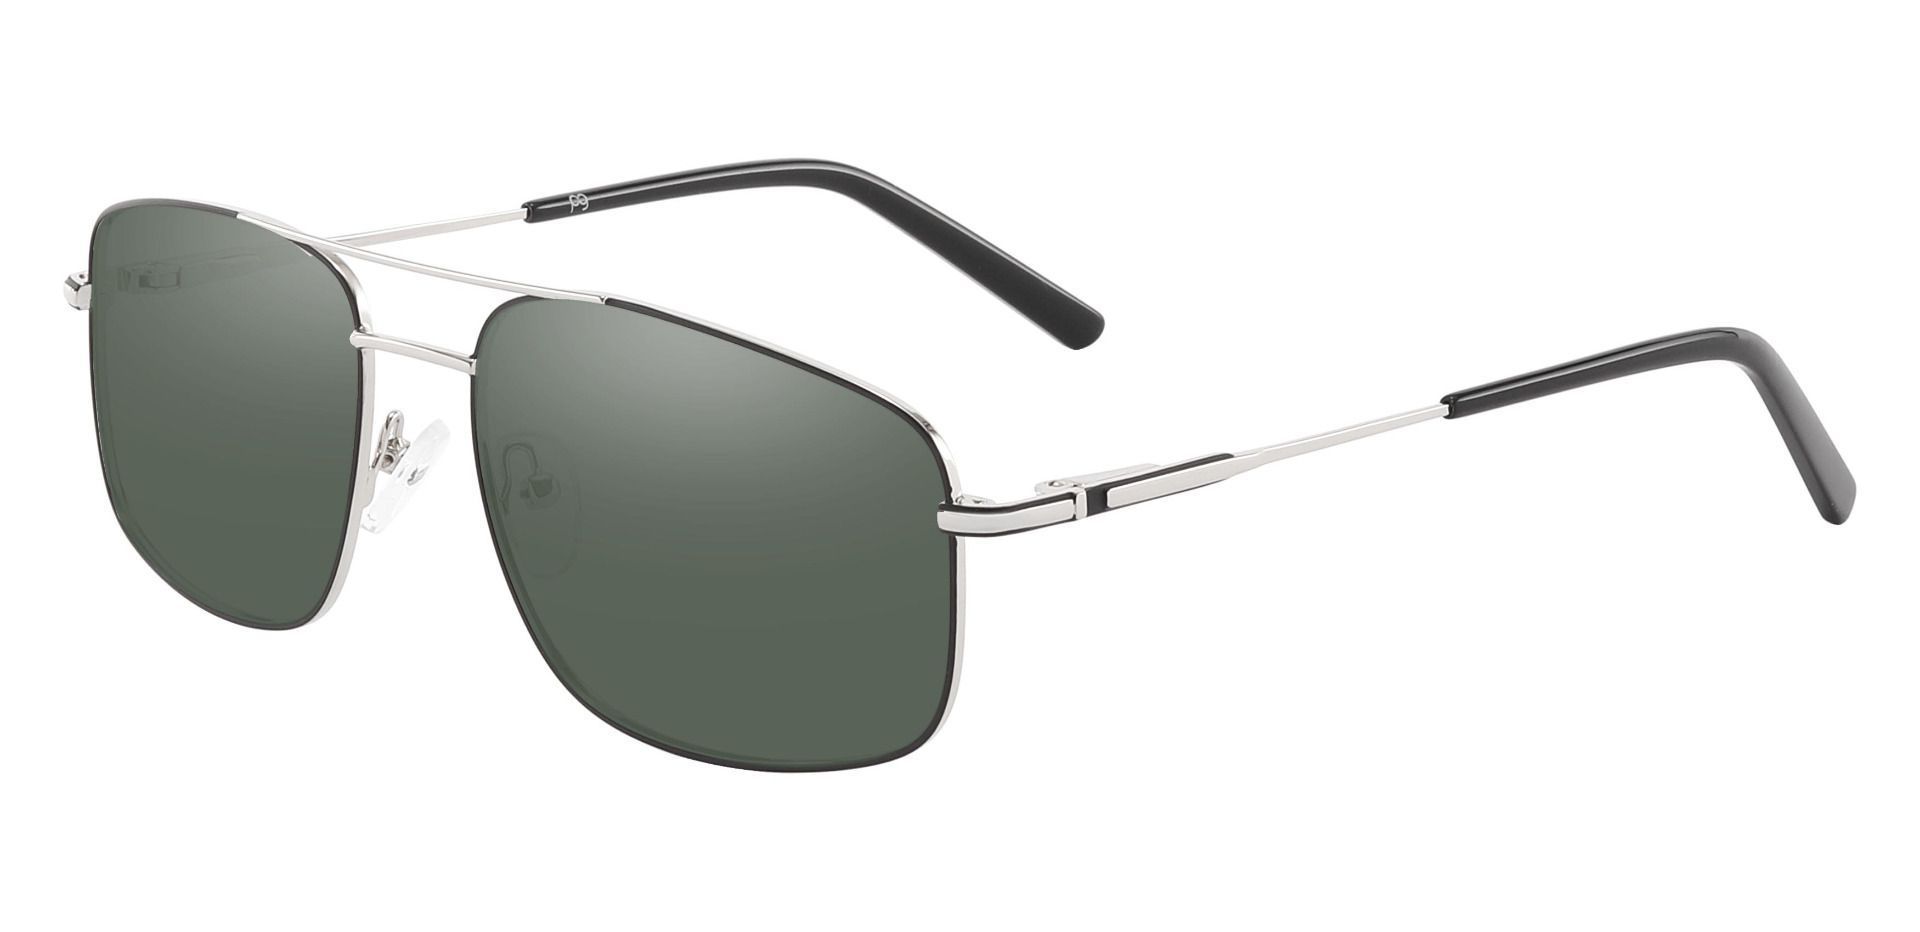 Turner Aviator Progressive Sunglasses - Silver Frame With Green Lenses